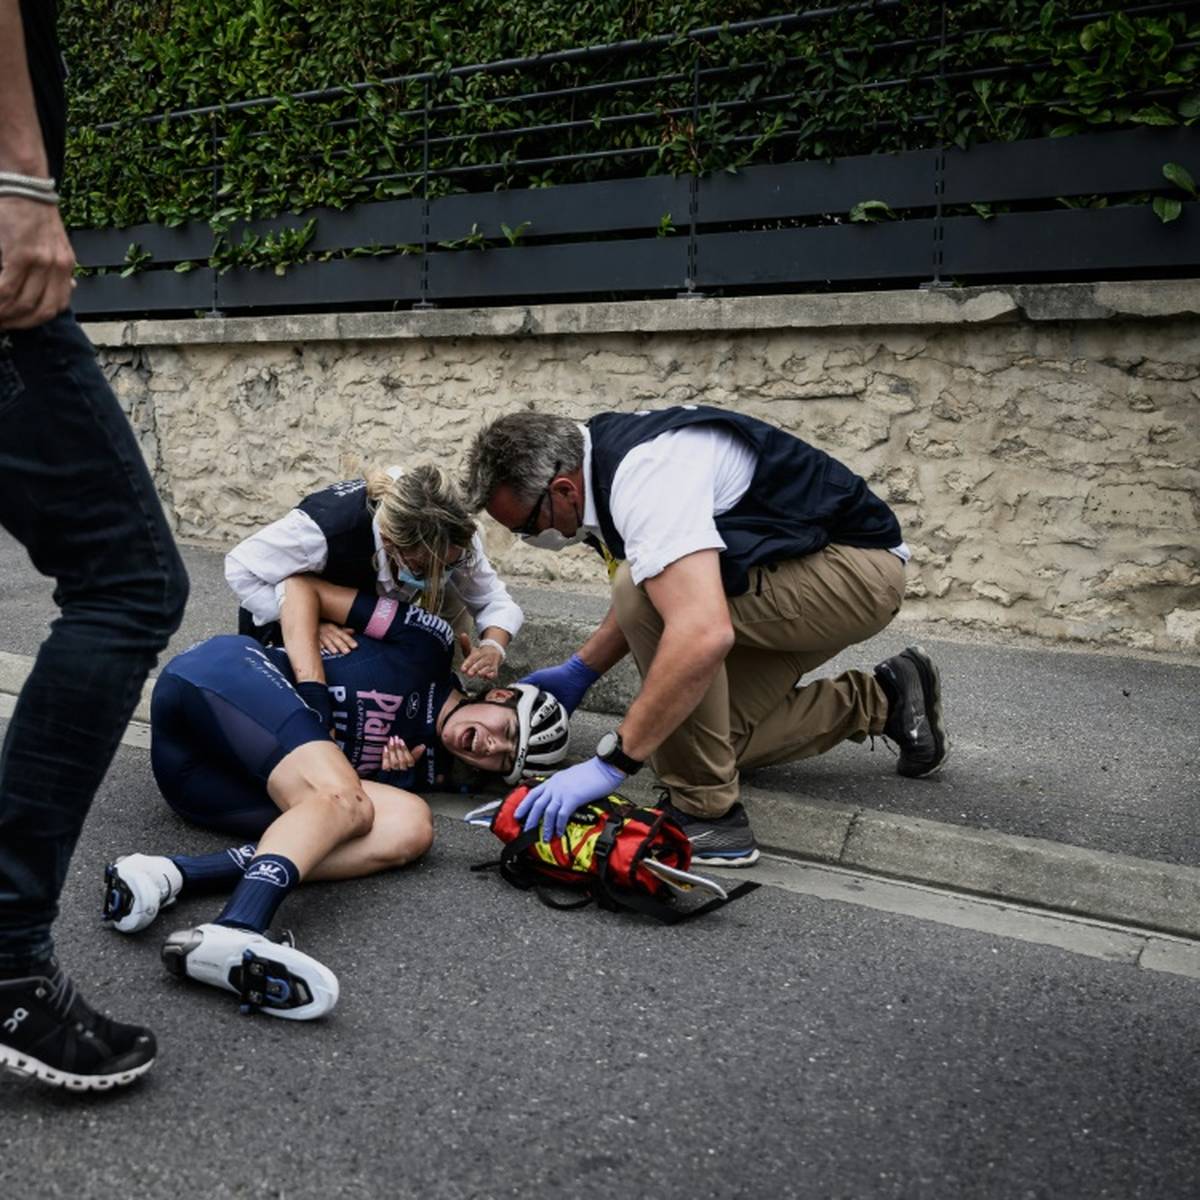 Laura Süßemilch musste die Tour de France schwerverletzt aufgeben. Nun äußert sich die 25-Jährige erstmals zu den harten Tagen nach ihrem Horrorsturz.